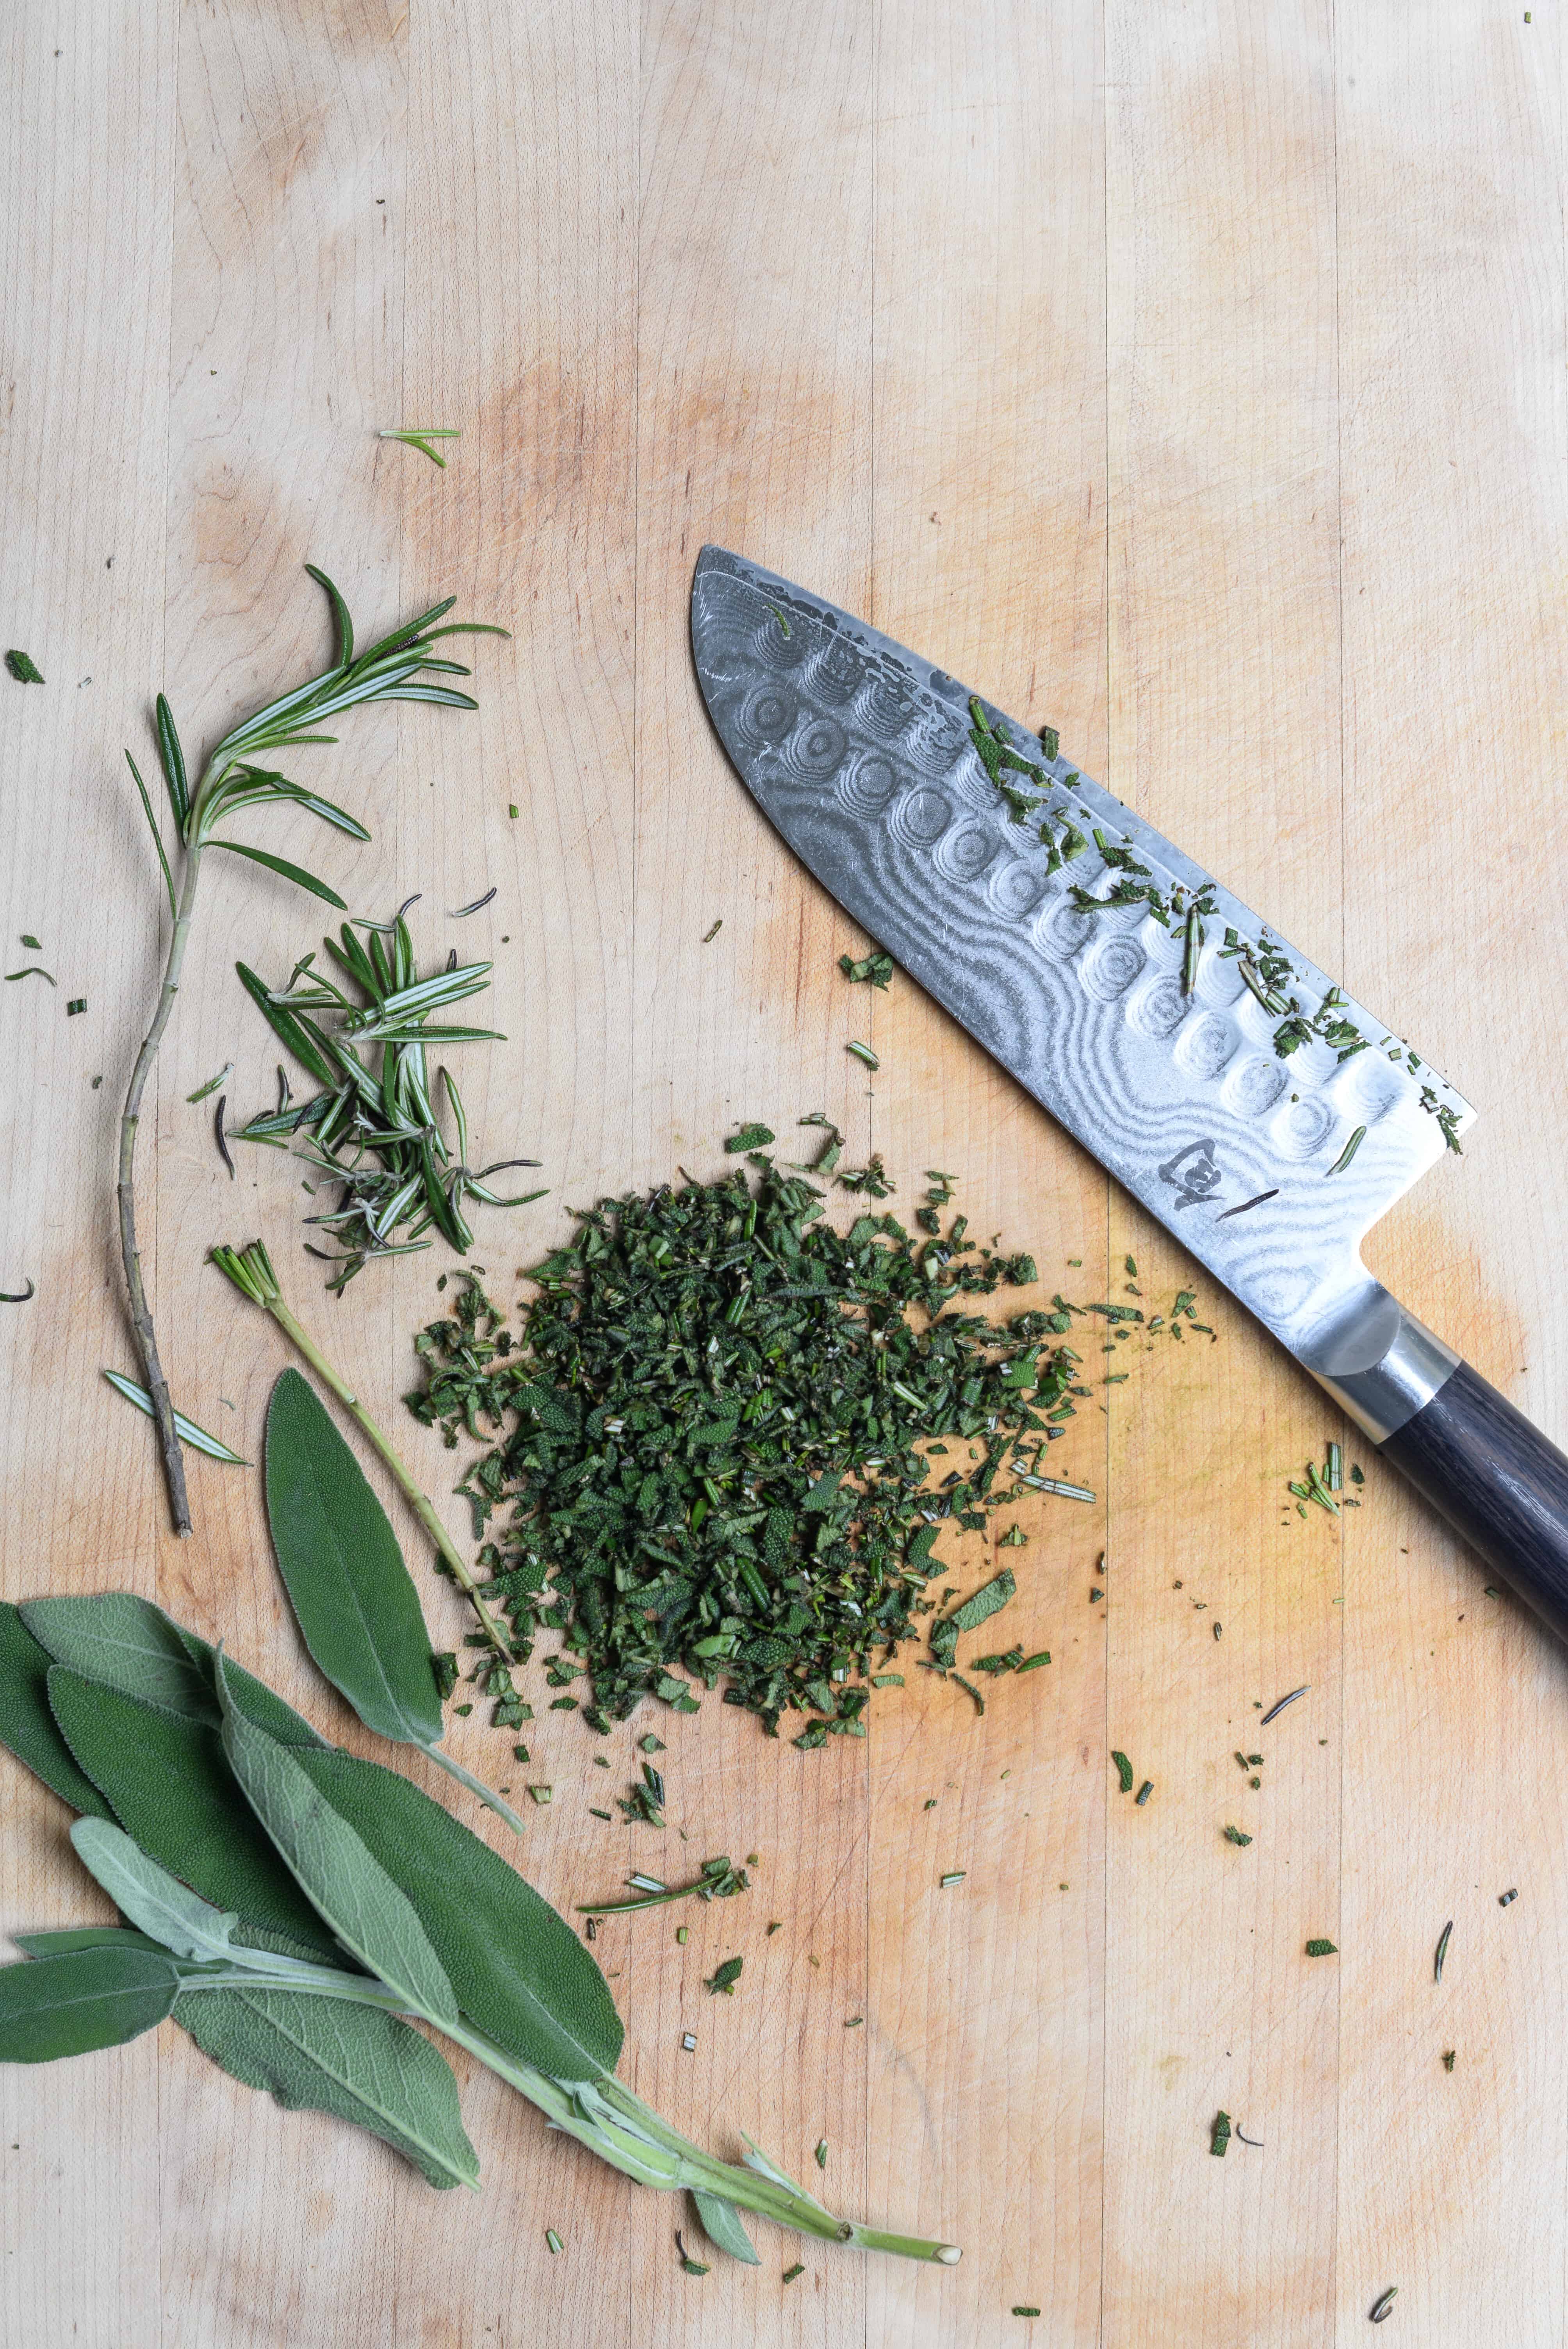 chopped herbs